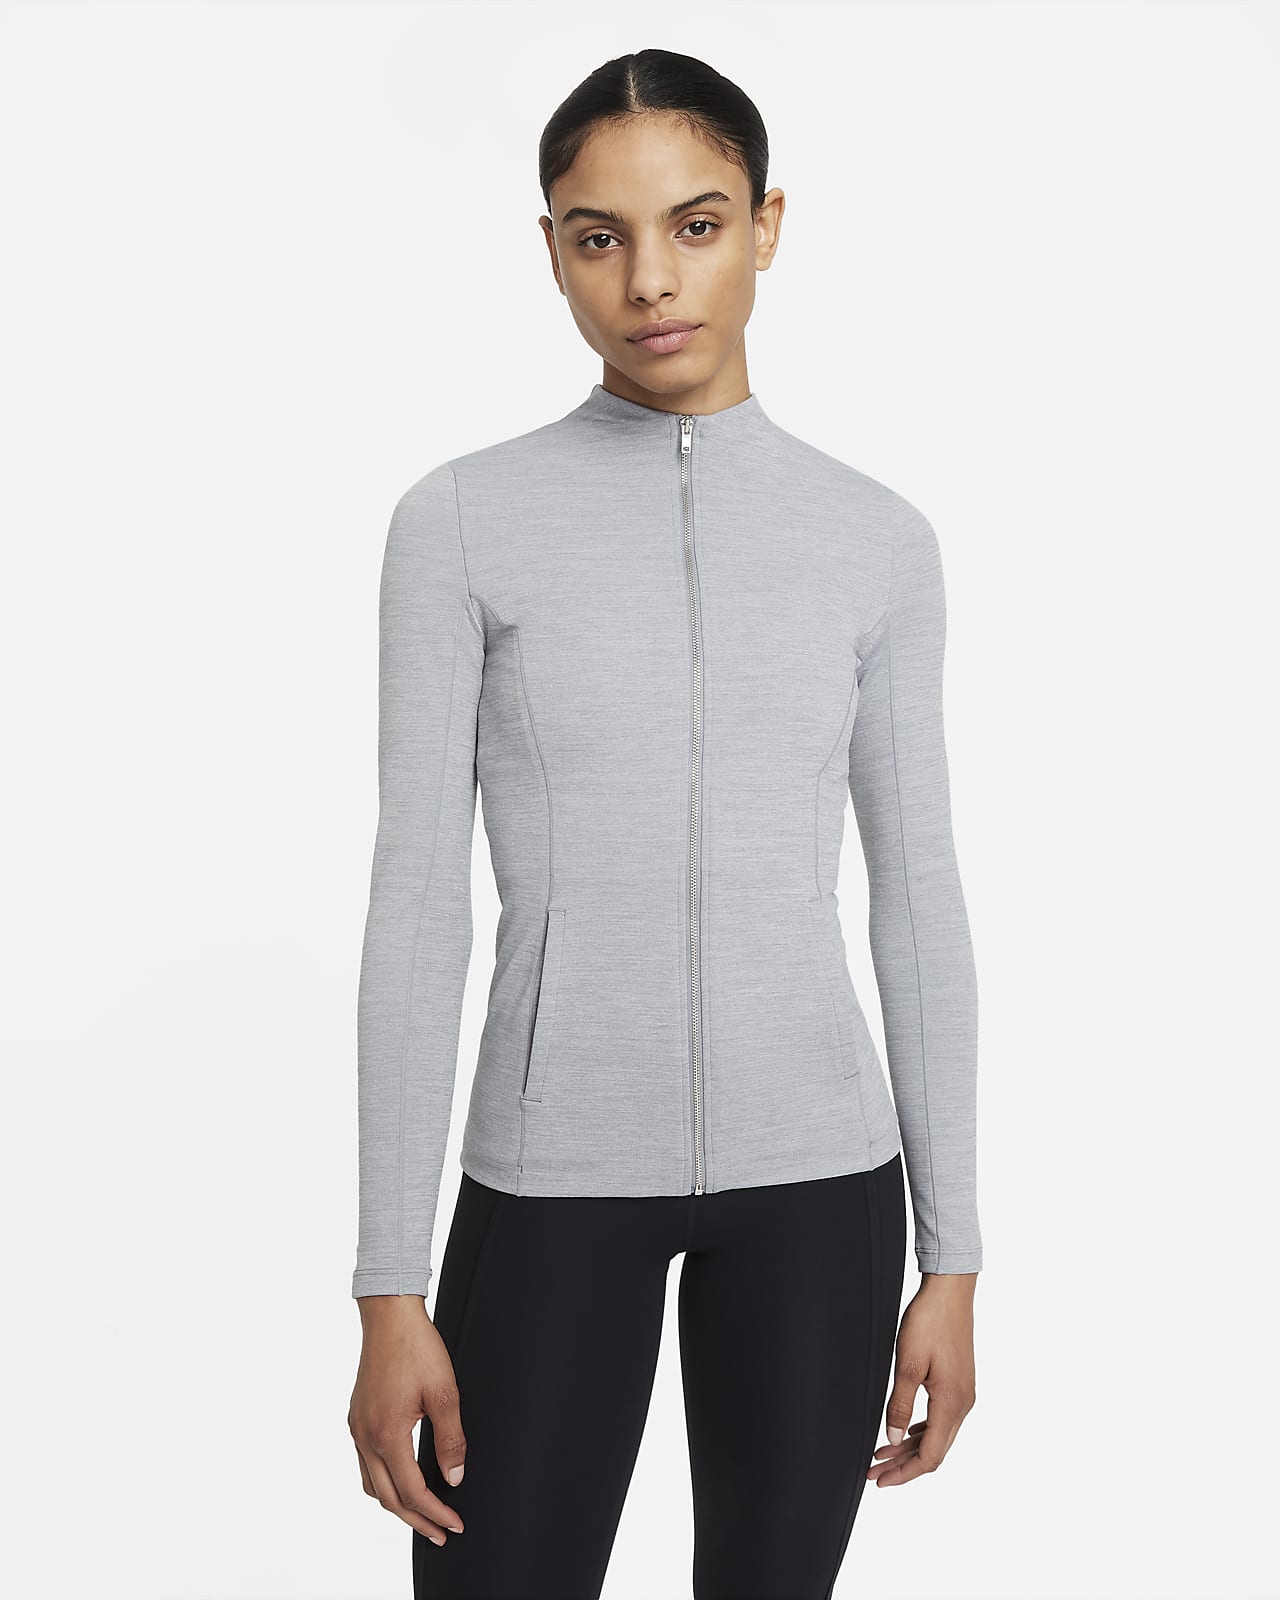 Nike Yoga Luxe Dri-FIT Women's Full-Zip Jacket